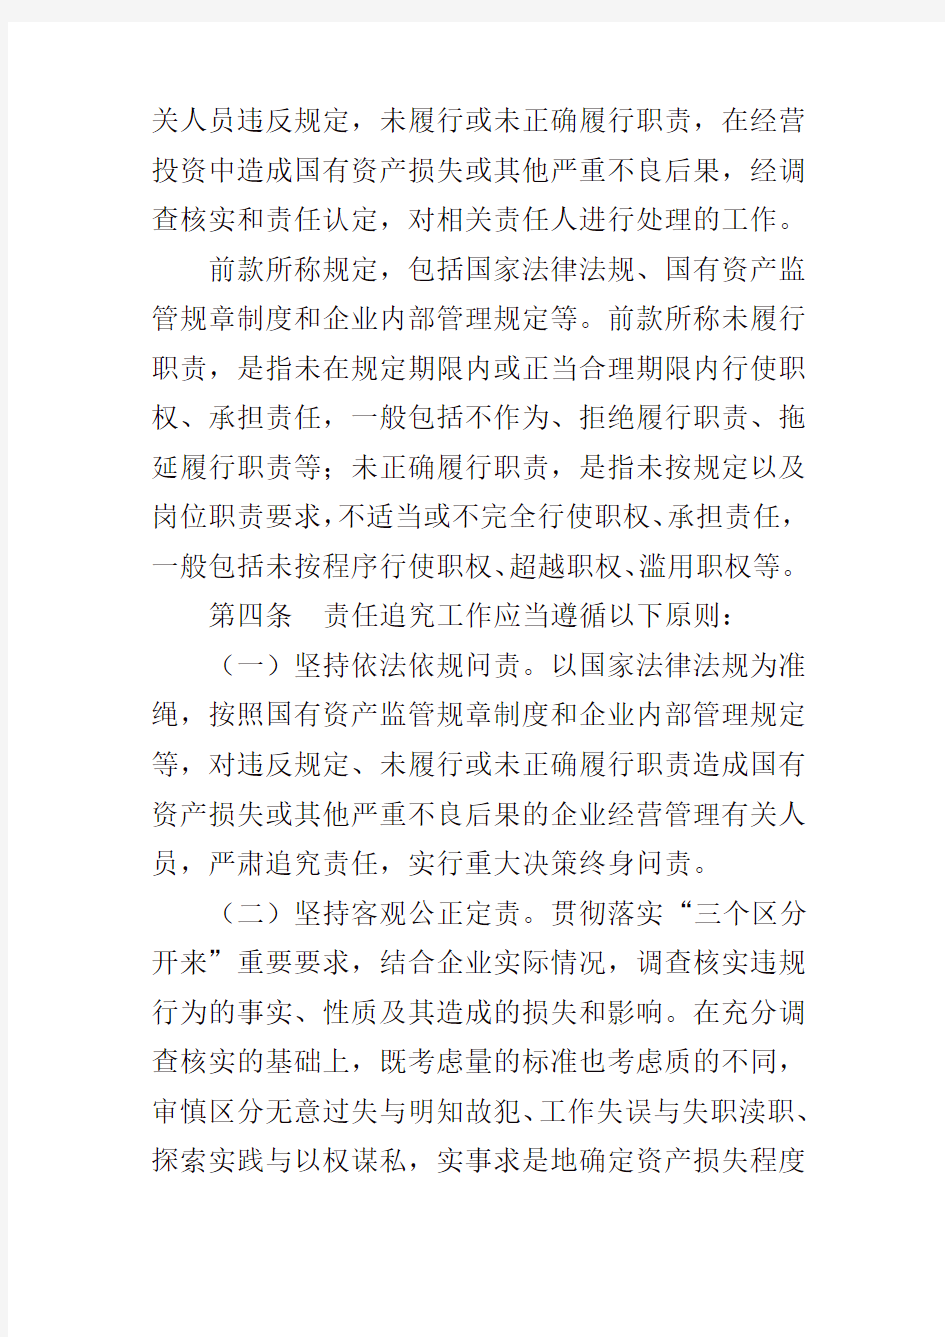 黑龙江省国有企业违规经营投资责任追究暂行办法(2019修订)